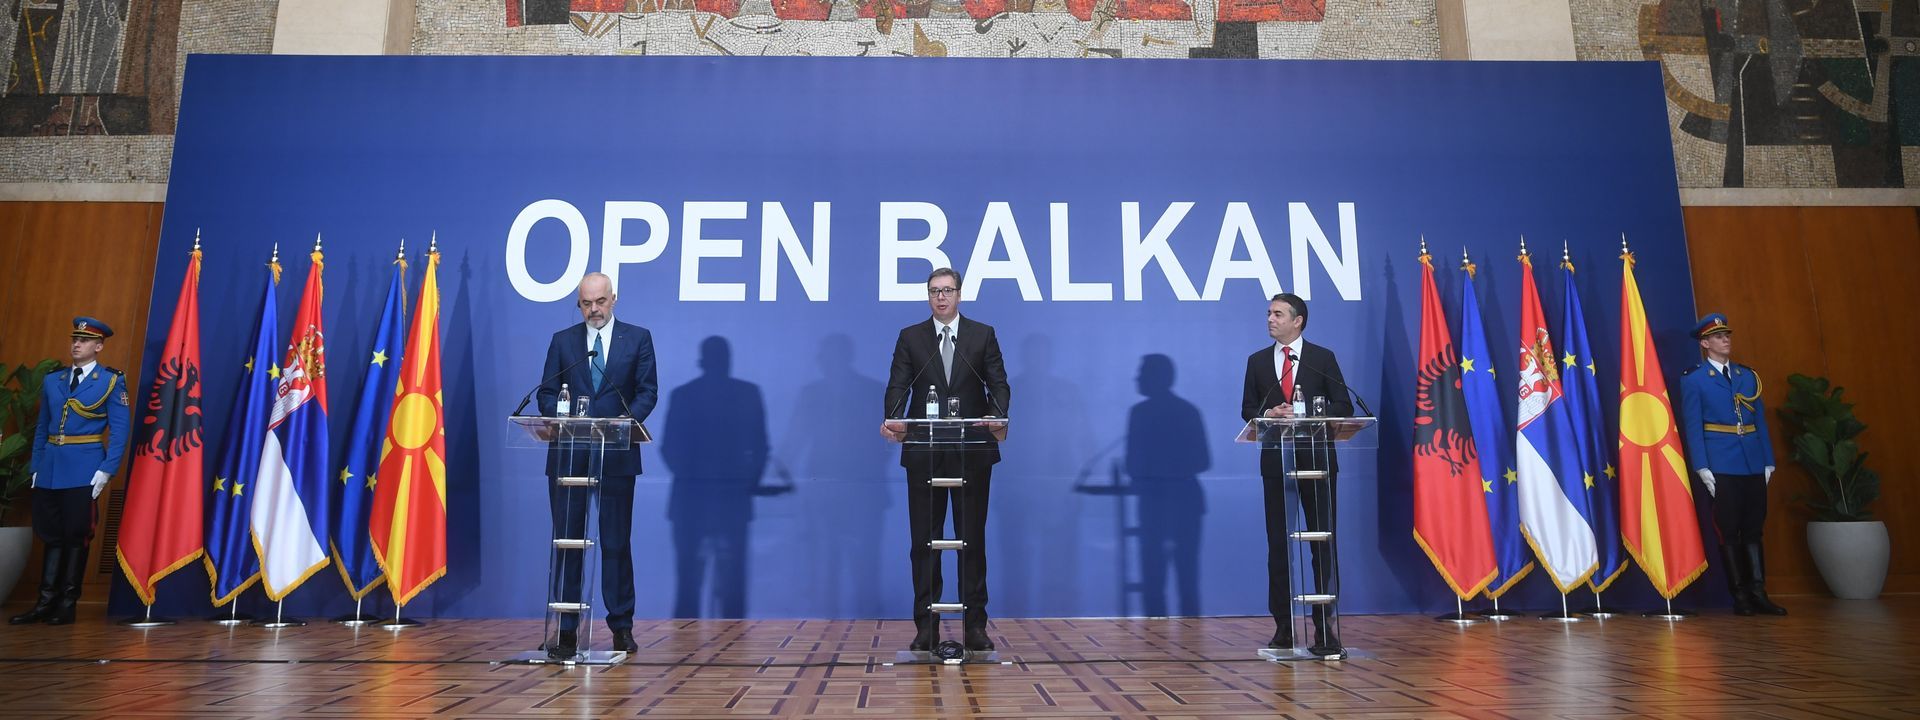 Otvoreni Balkan, za i protiv - Budućnost uslovljena političkom voljom